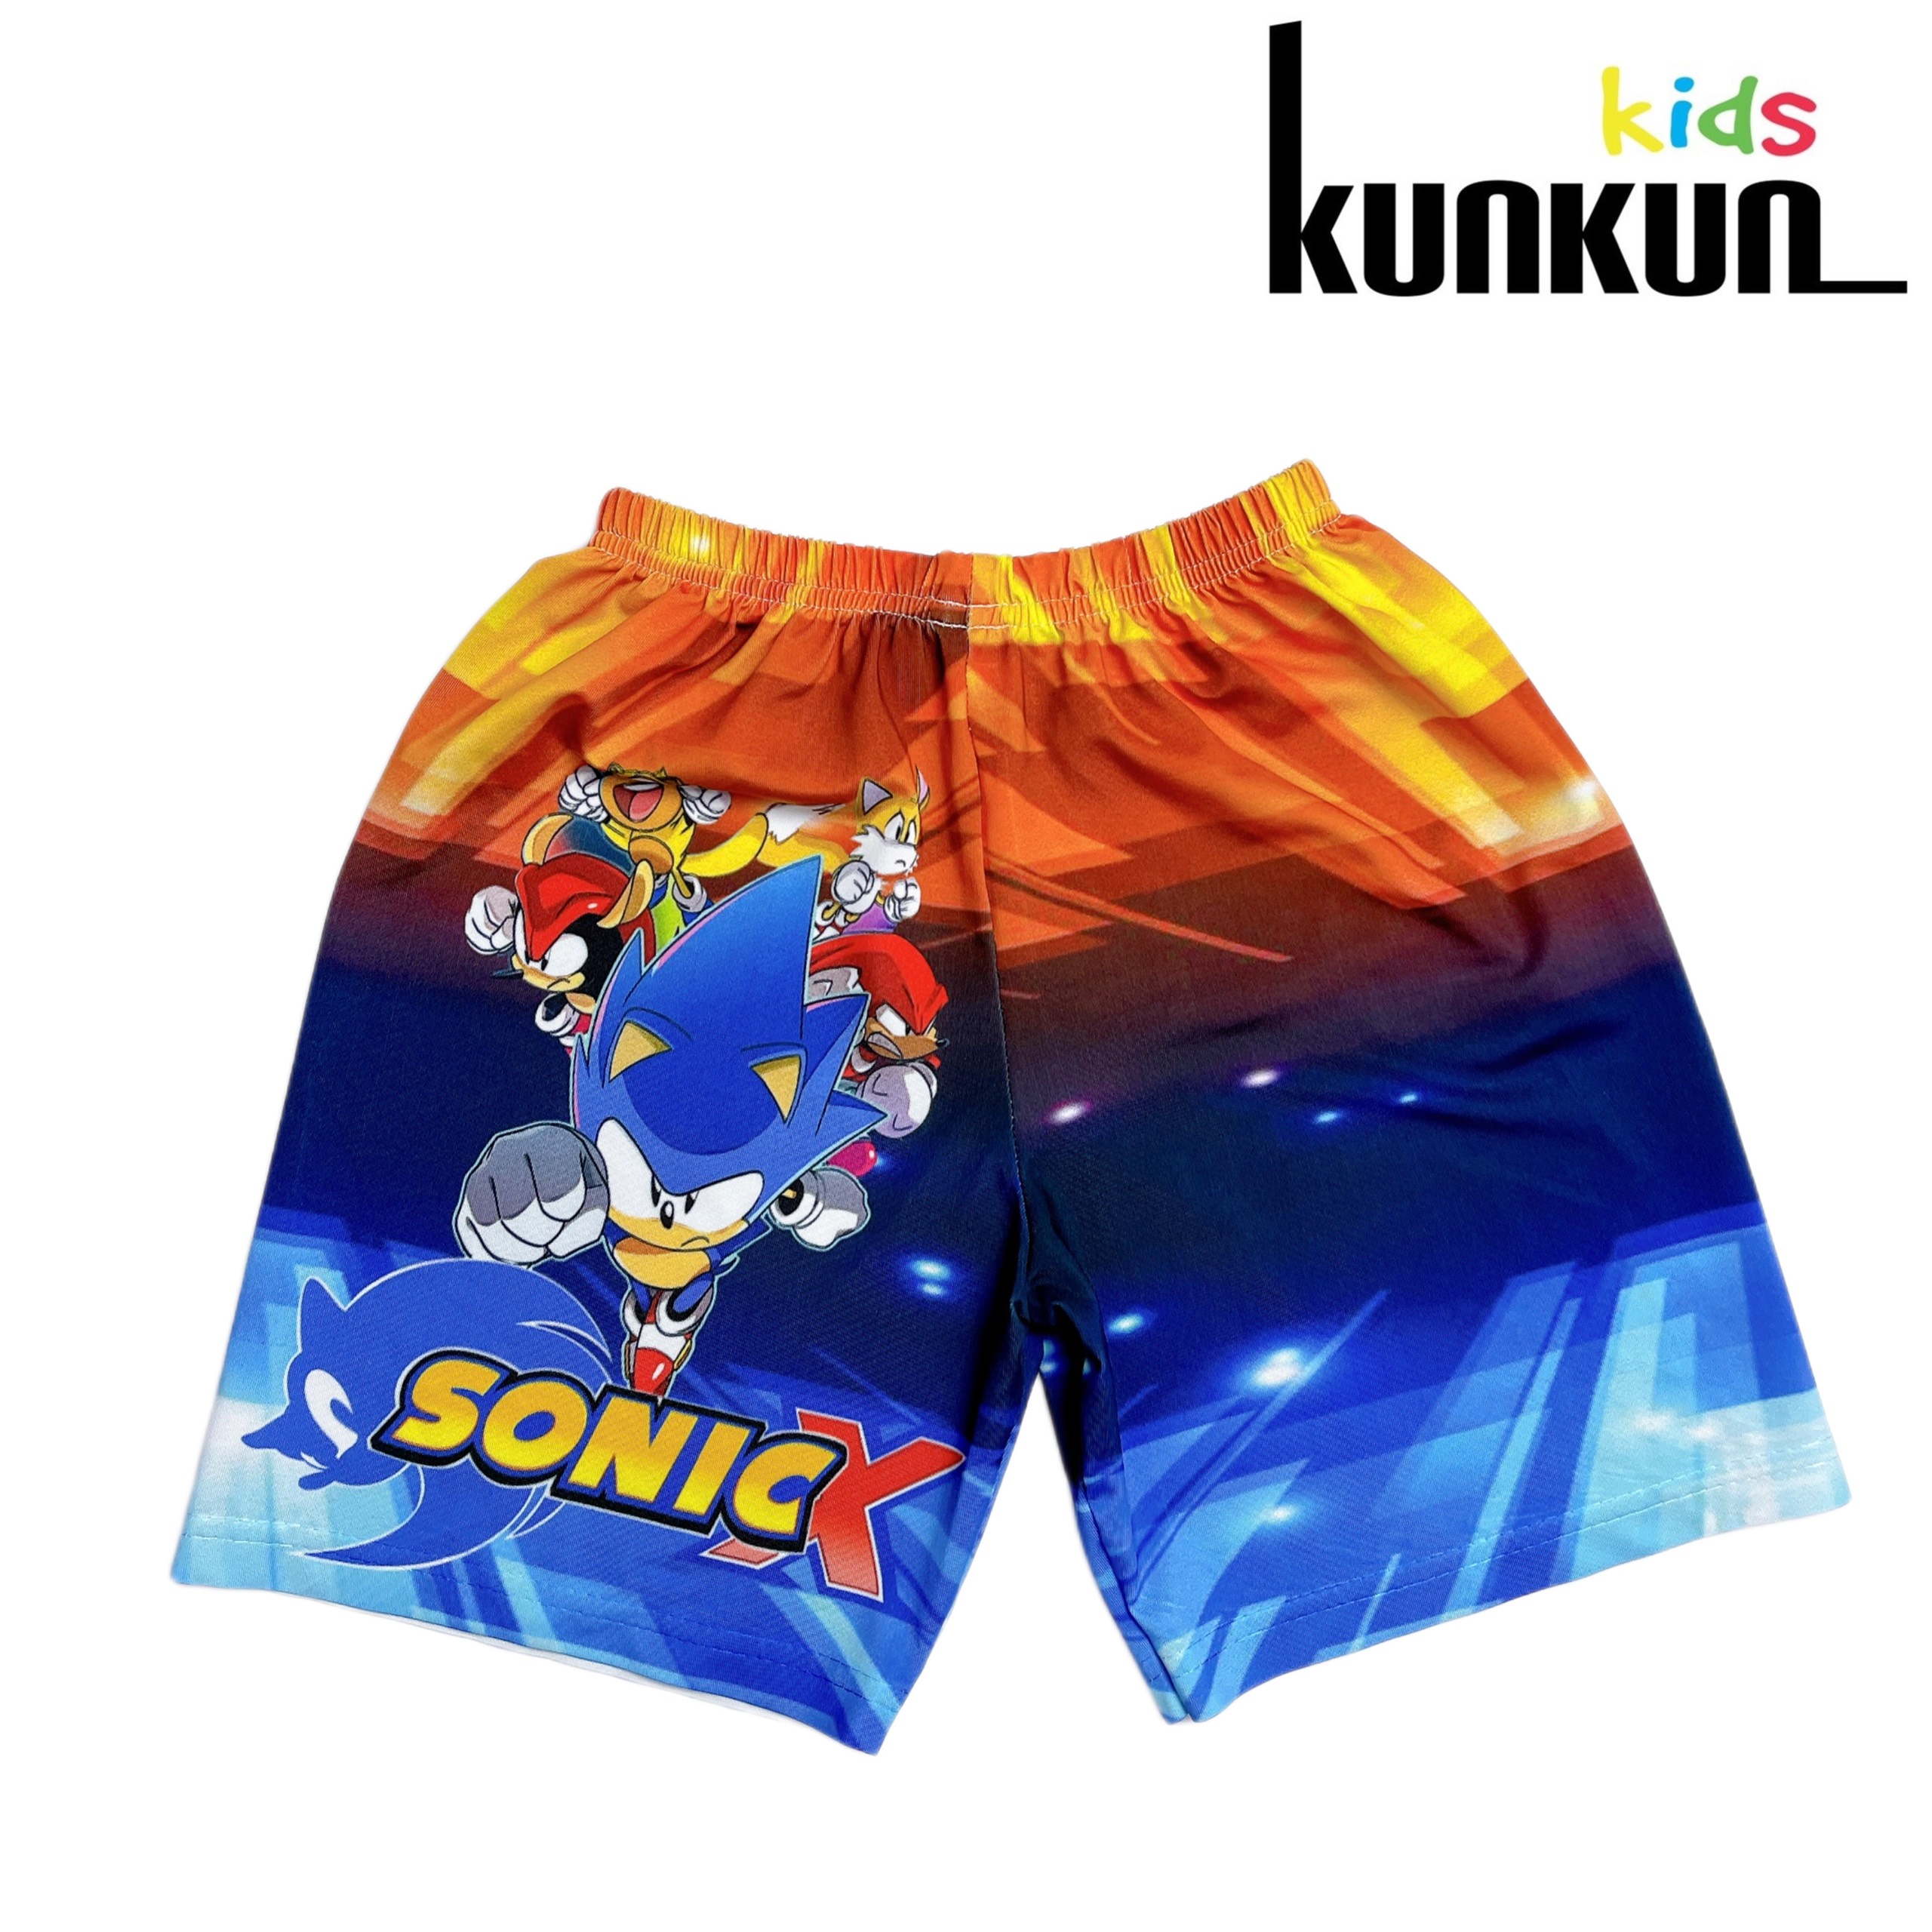 Đồ bộ bé trai thun lạnh in hình Sonic KunKun Kid TP1007-1061-1051& BL1061 - Quần áo trẻ em size đại từ 10-60kg